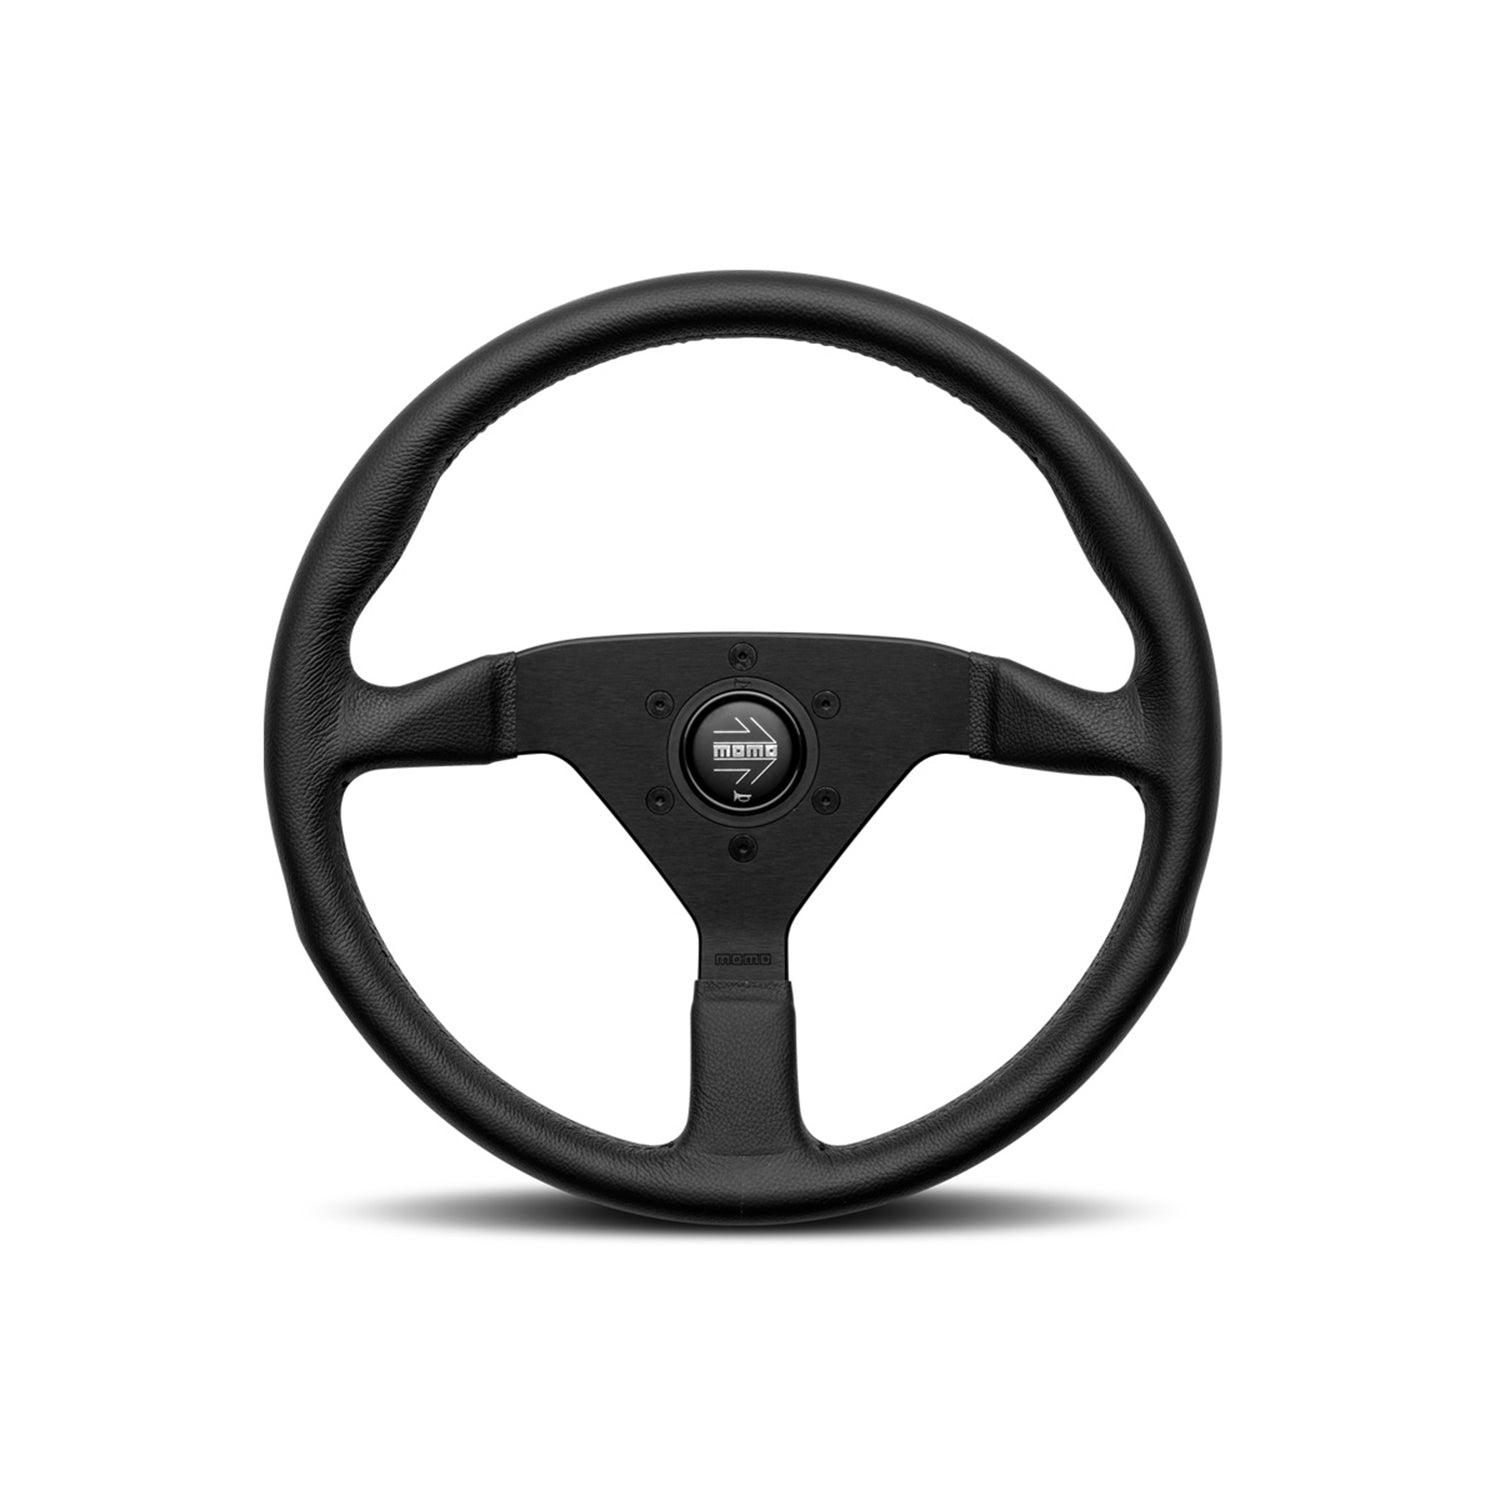 MOMO Montecarlo Steering Wheel In Black Leather 350mm Diameter